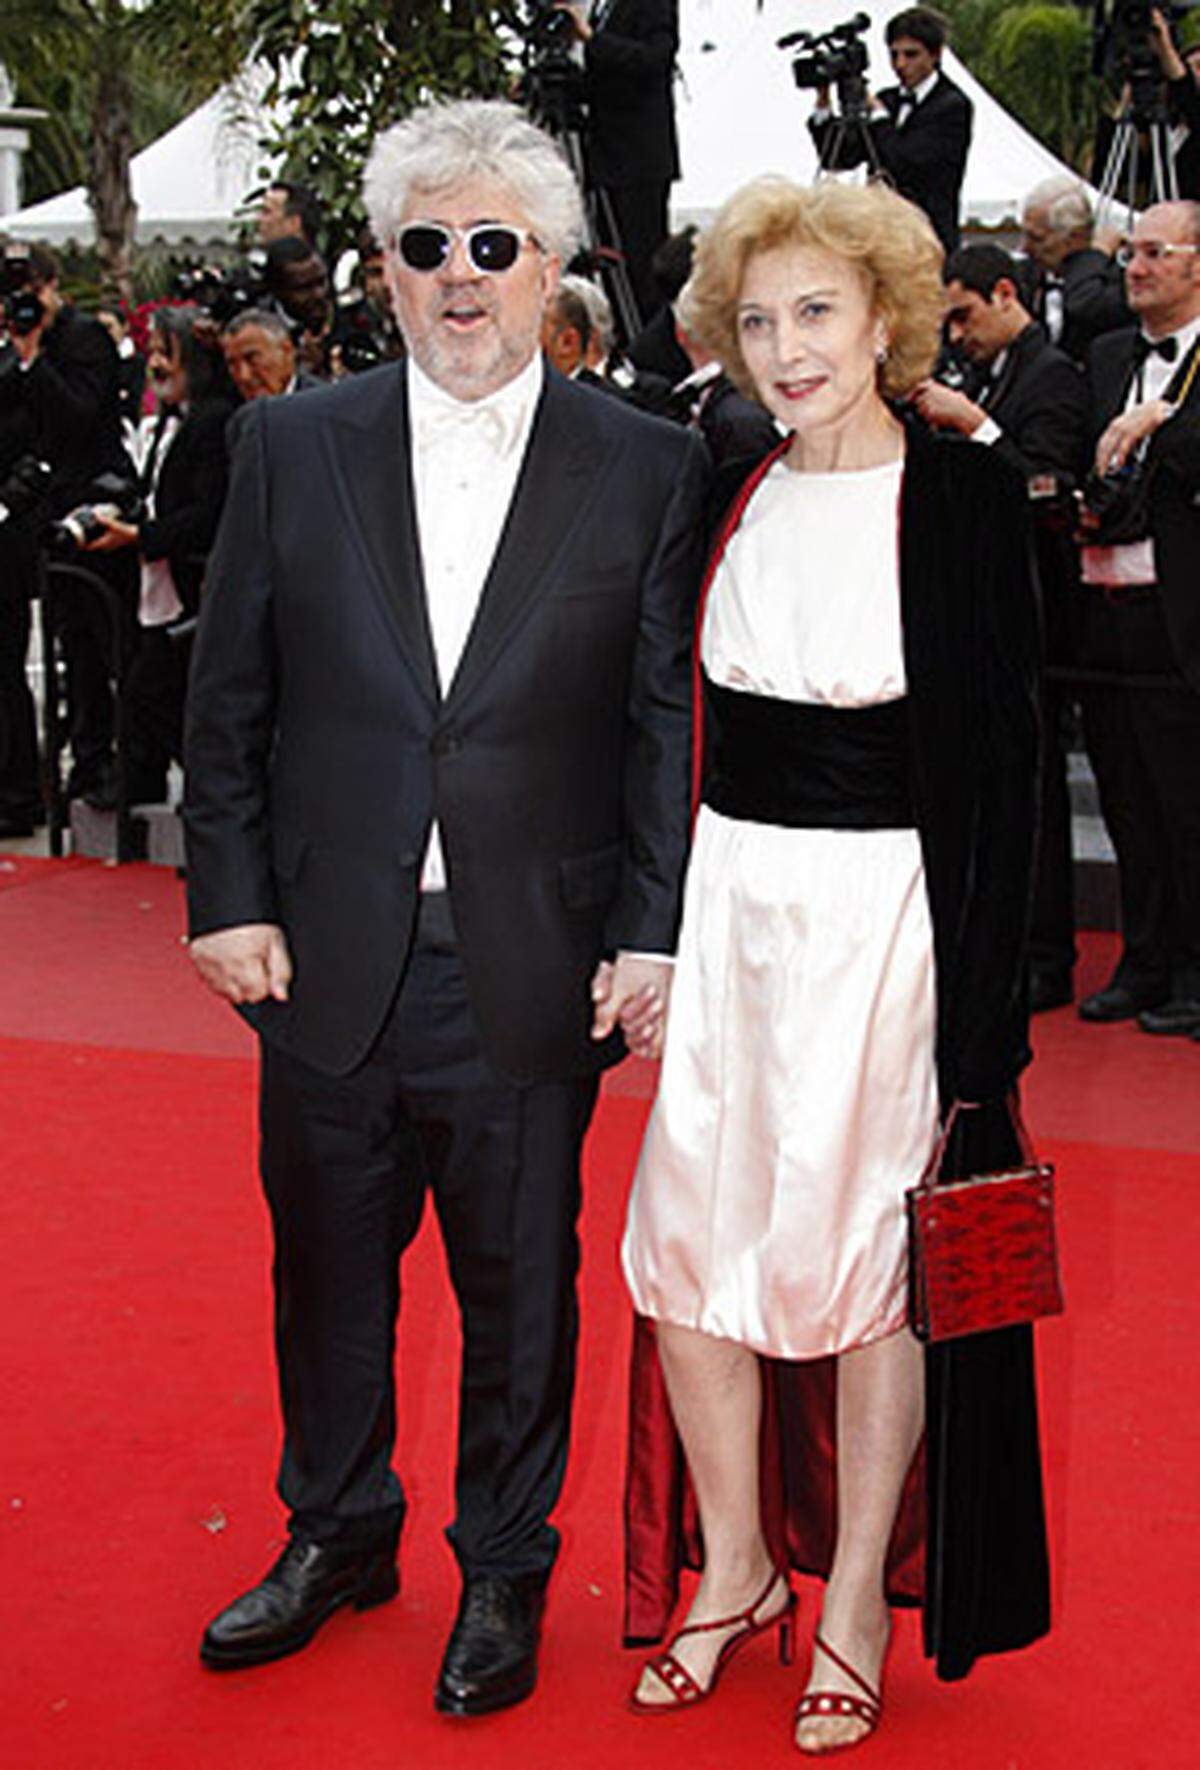 Der spanische Regisseur Pedro Almodóvar zog mit einer Landsfrau, der Schauspielerin Maria Luisa Paredes über den roten Teppich.